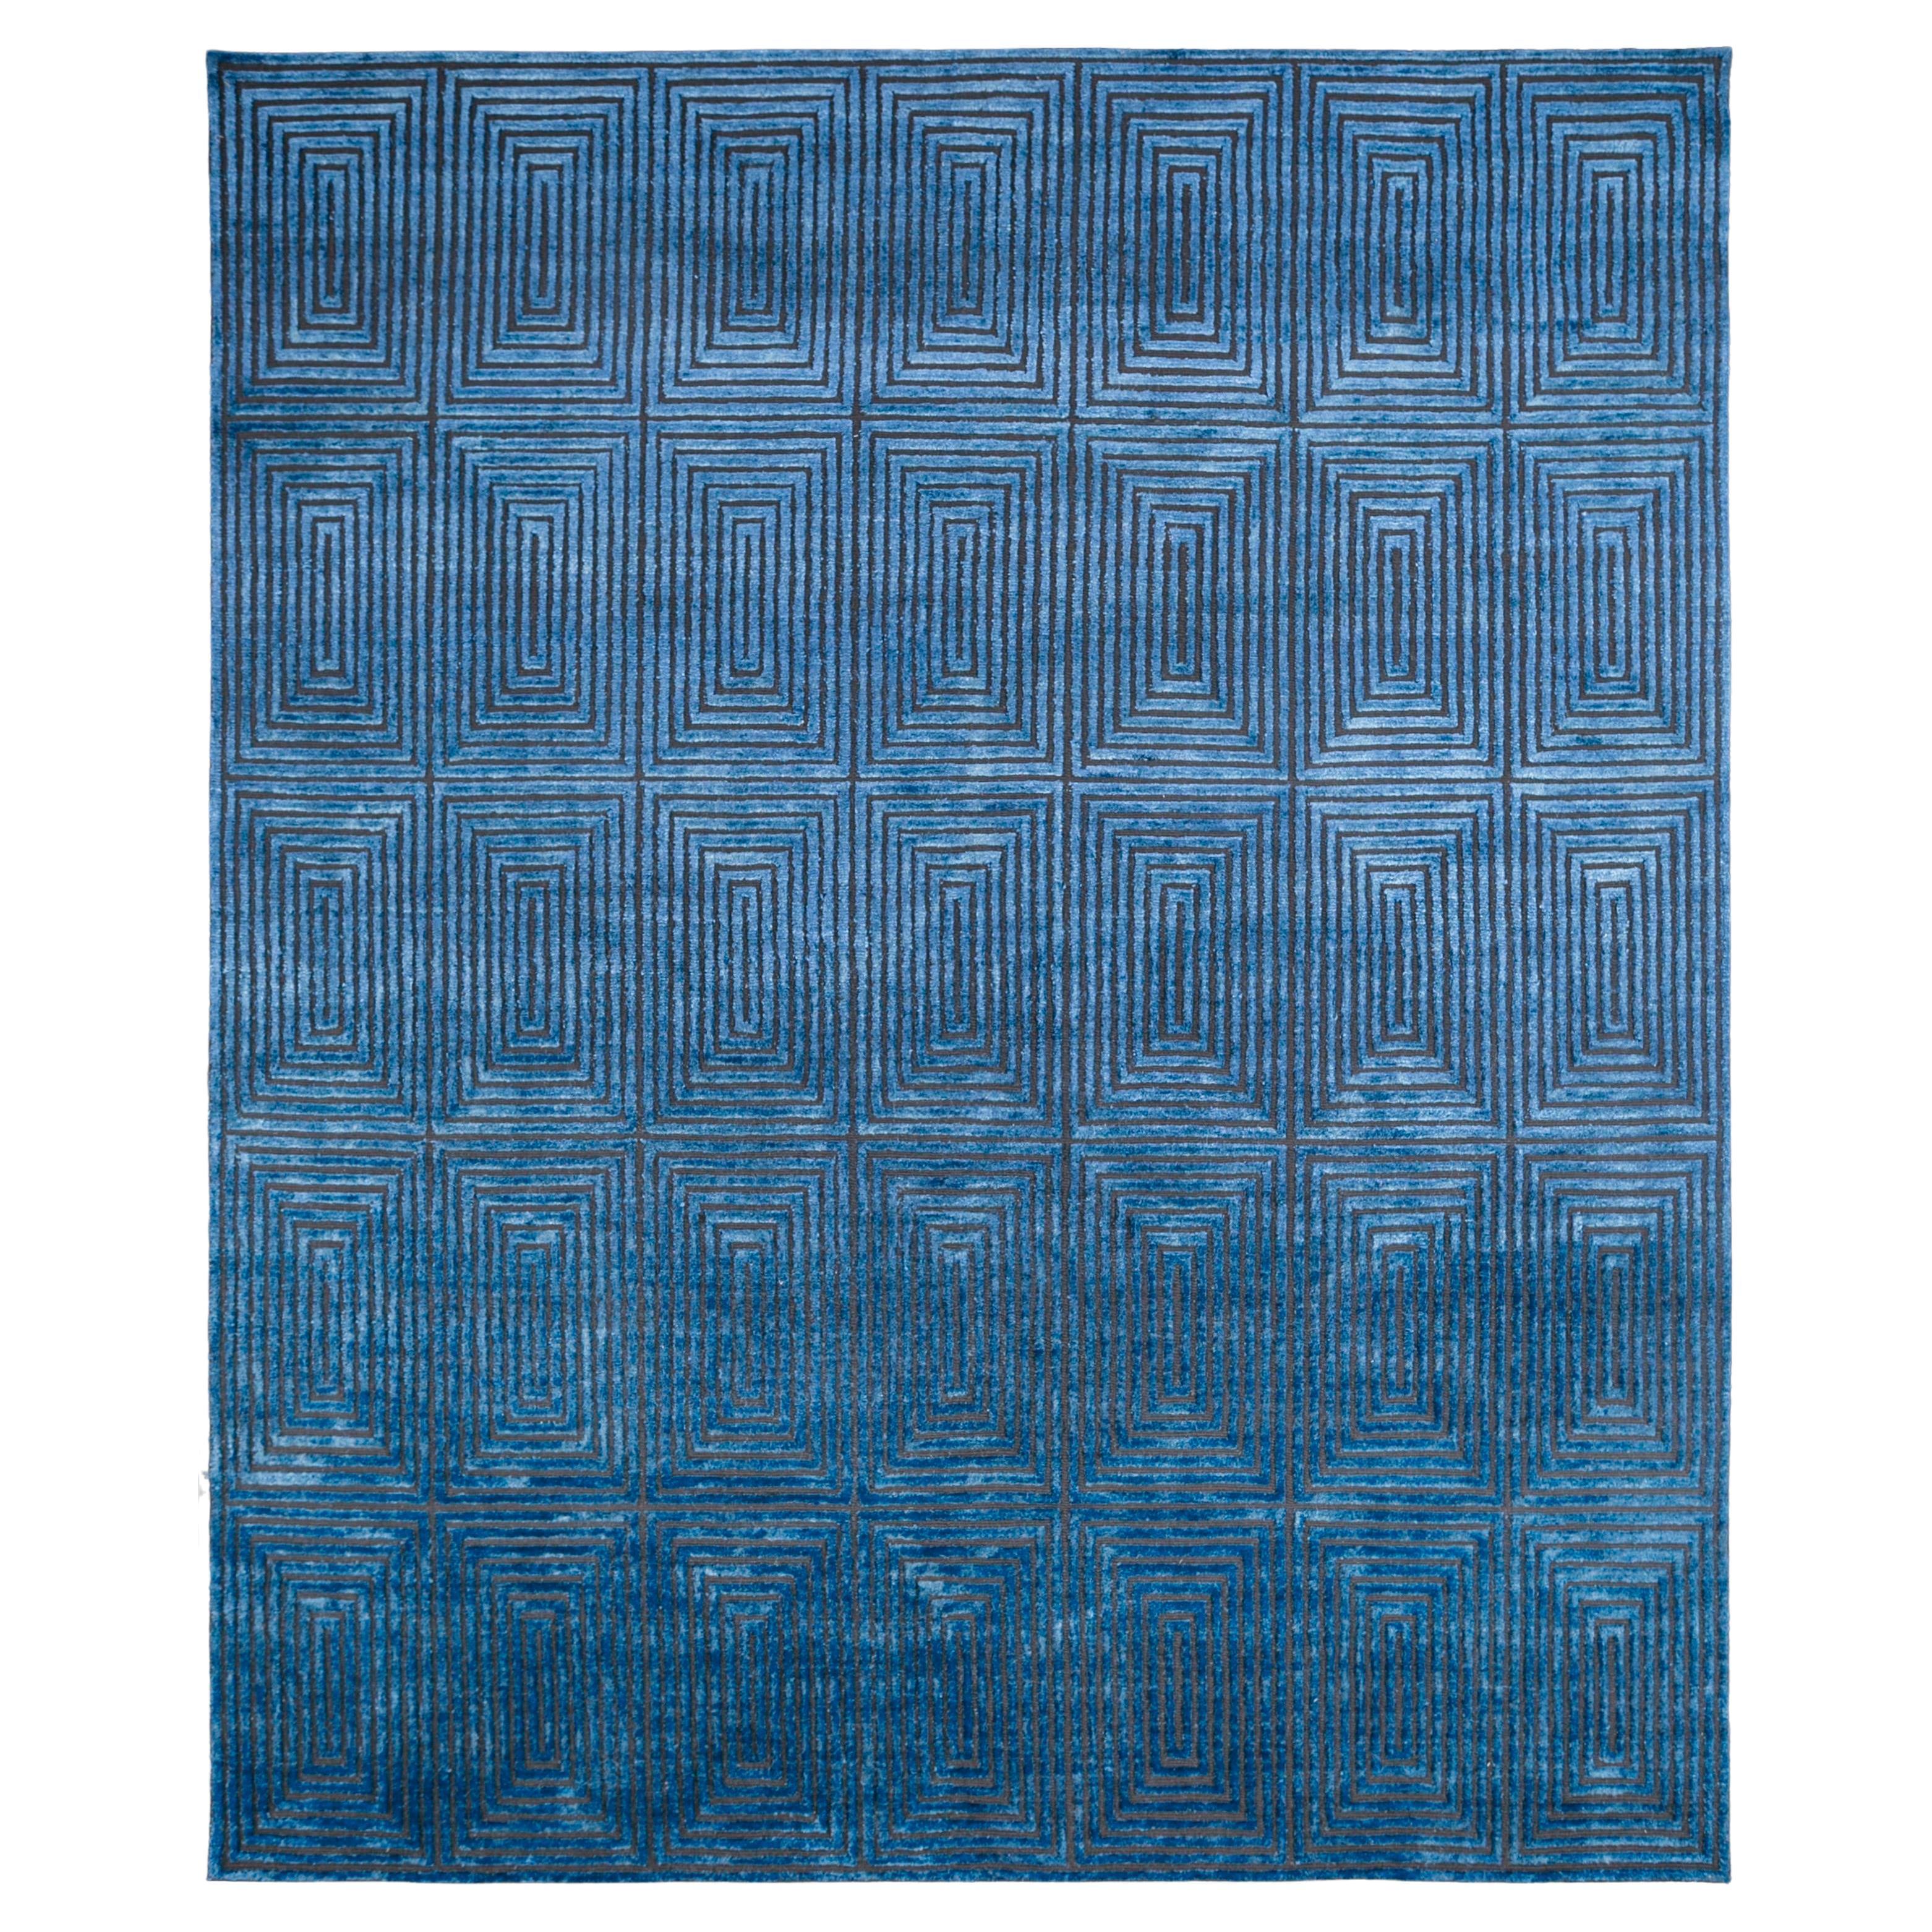  Kobaltfarbener Teppich von Rural Weavers, geknüpft, Wolle, Seide, 180x270cm im Angebot